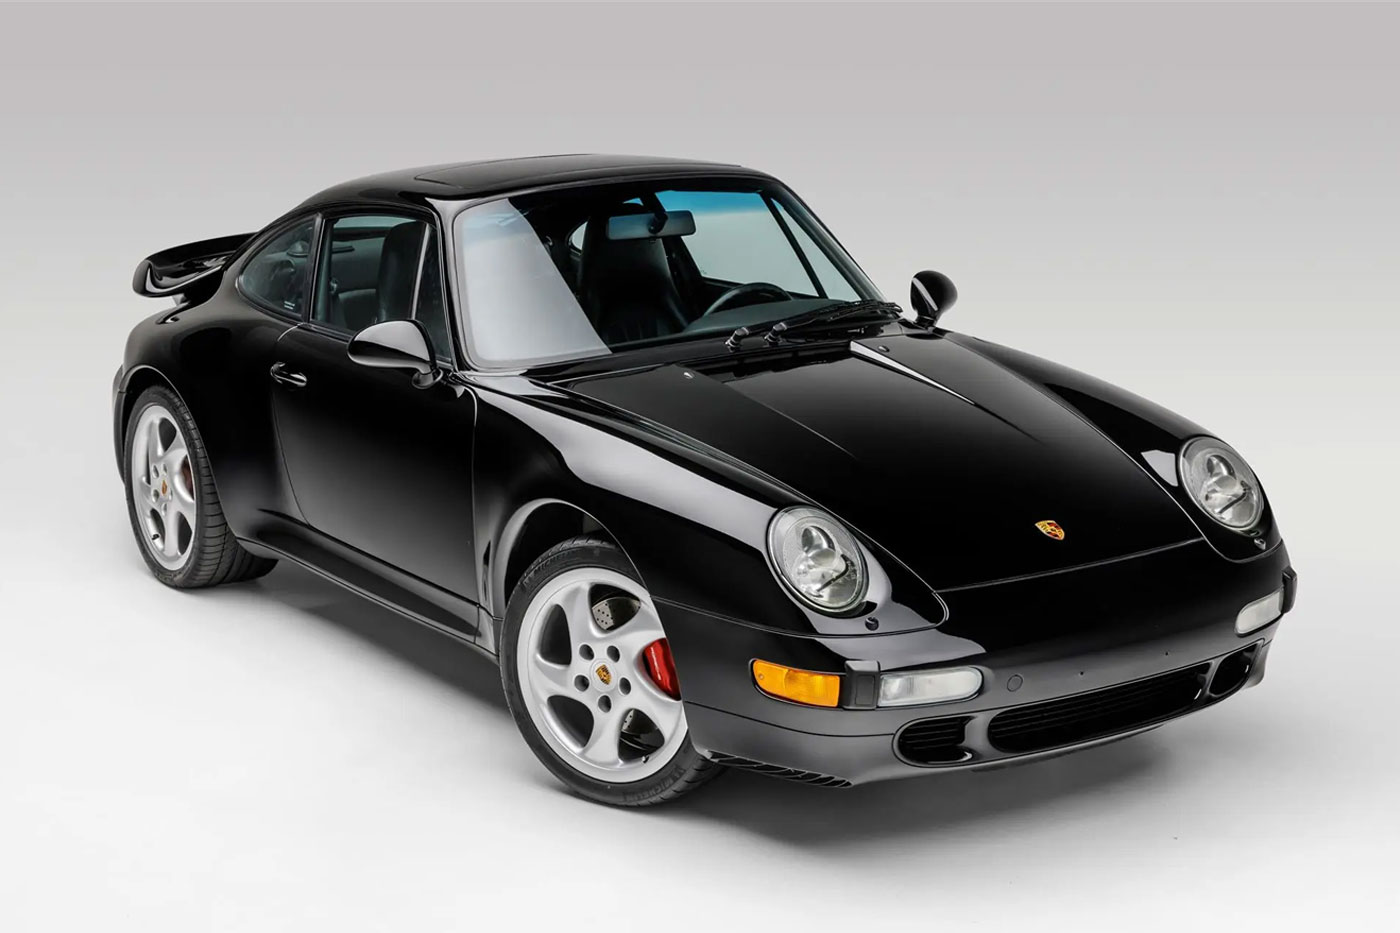 เปิดประมูล Porsche 911 Turbo 993 หนึ่งในคอลเลคชั่นรถของ Denzel Washington